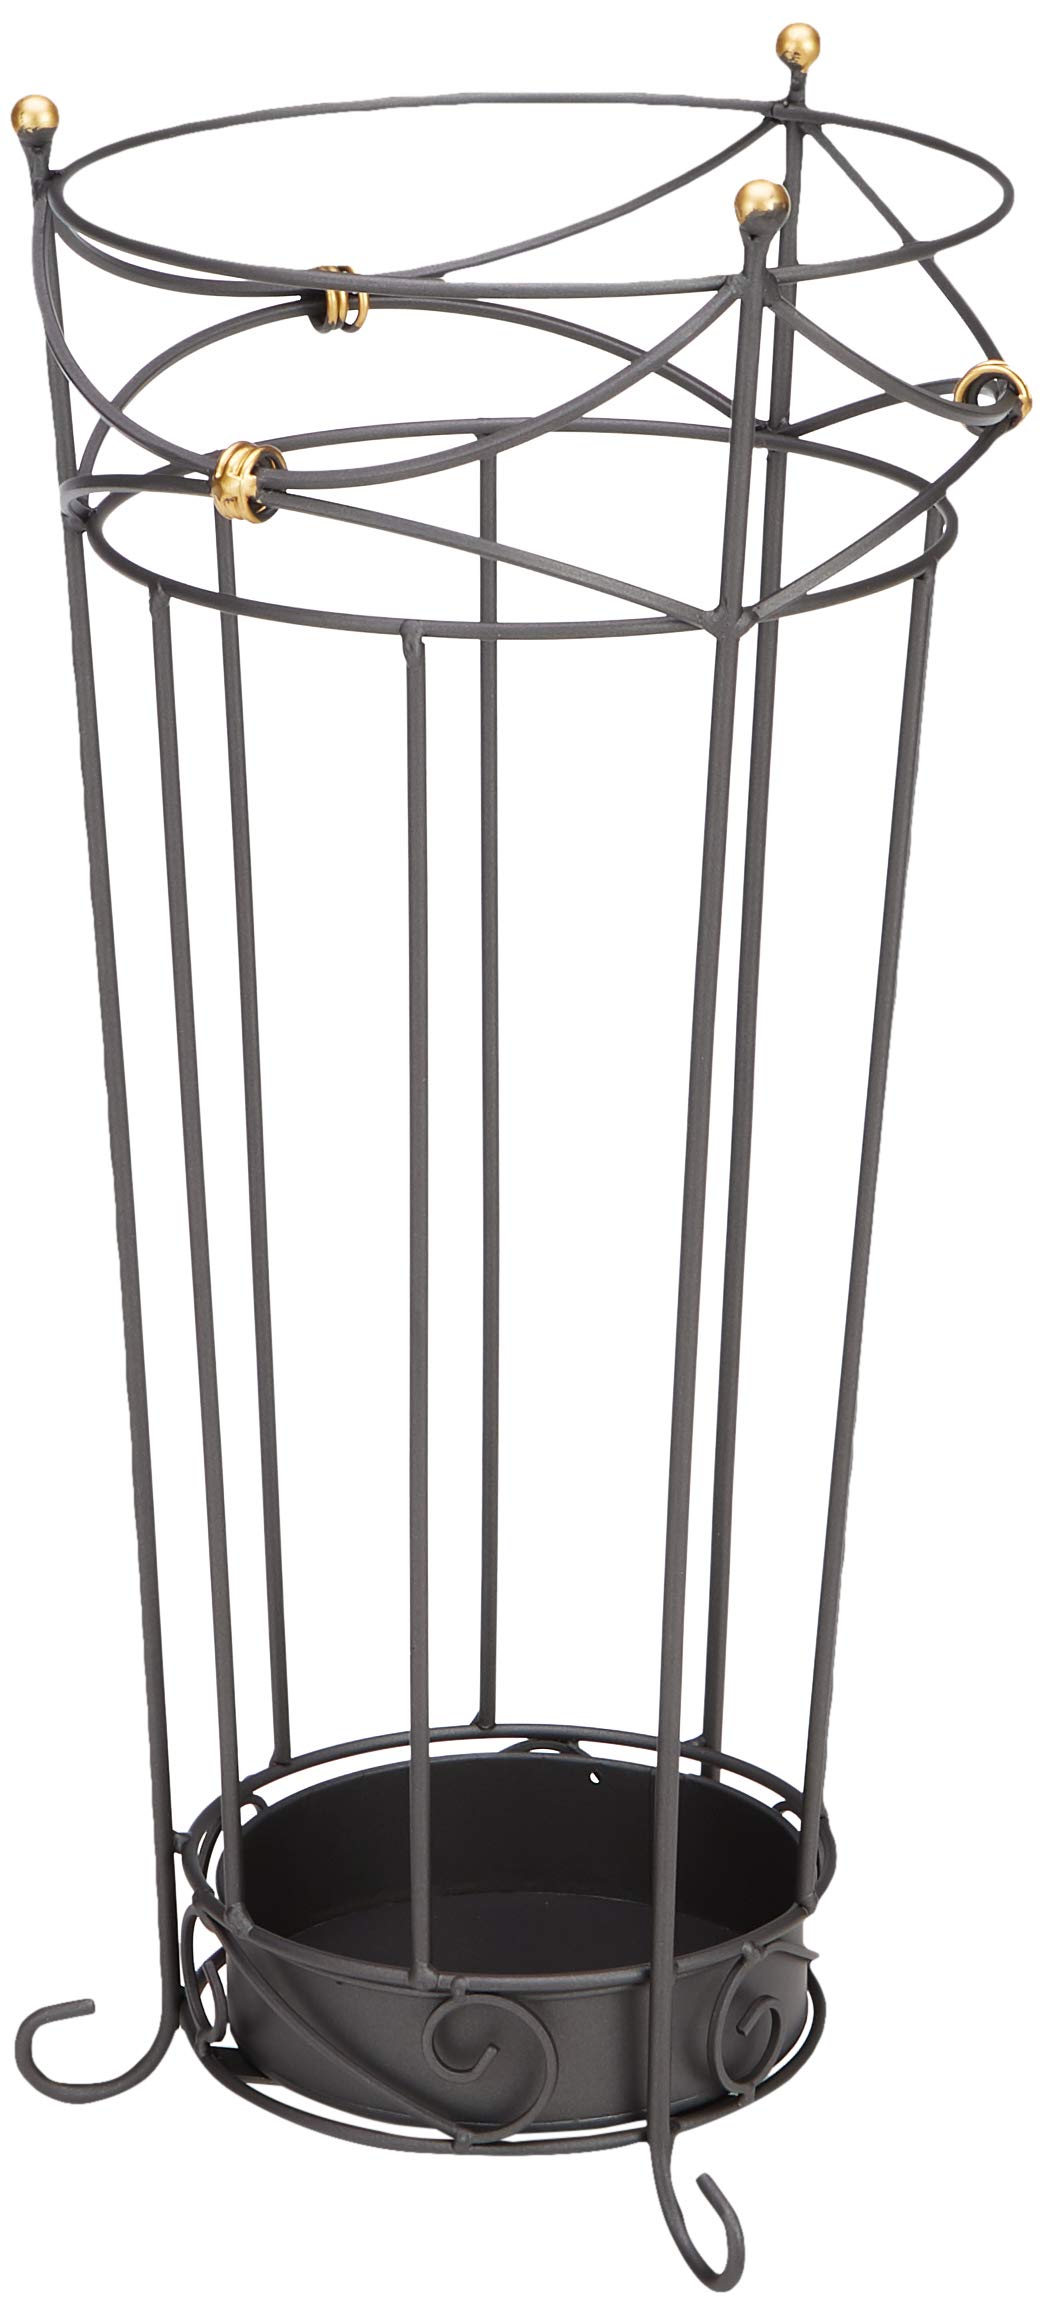 HAKU Möbel Schirmständer, Metall, anthrazit, Ø 24 x H 55 cm